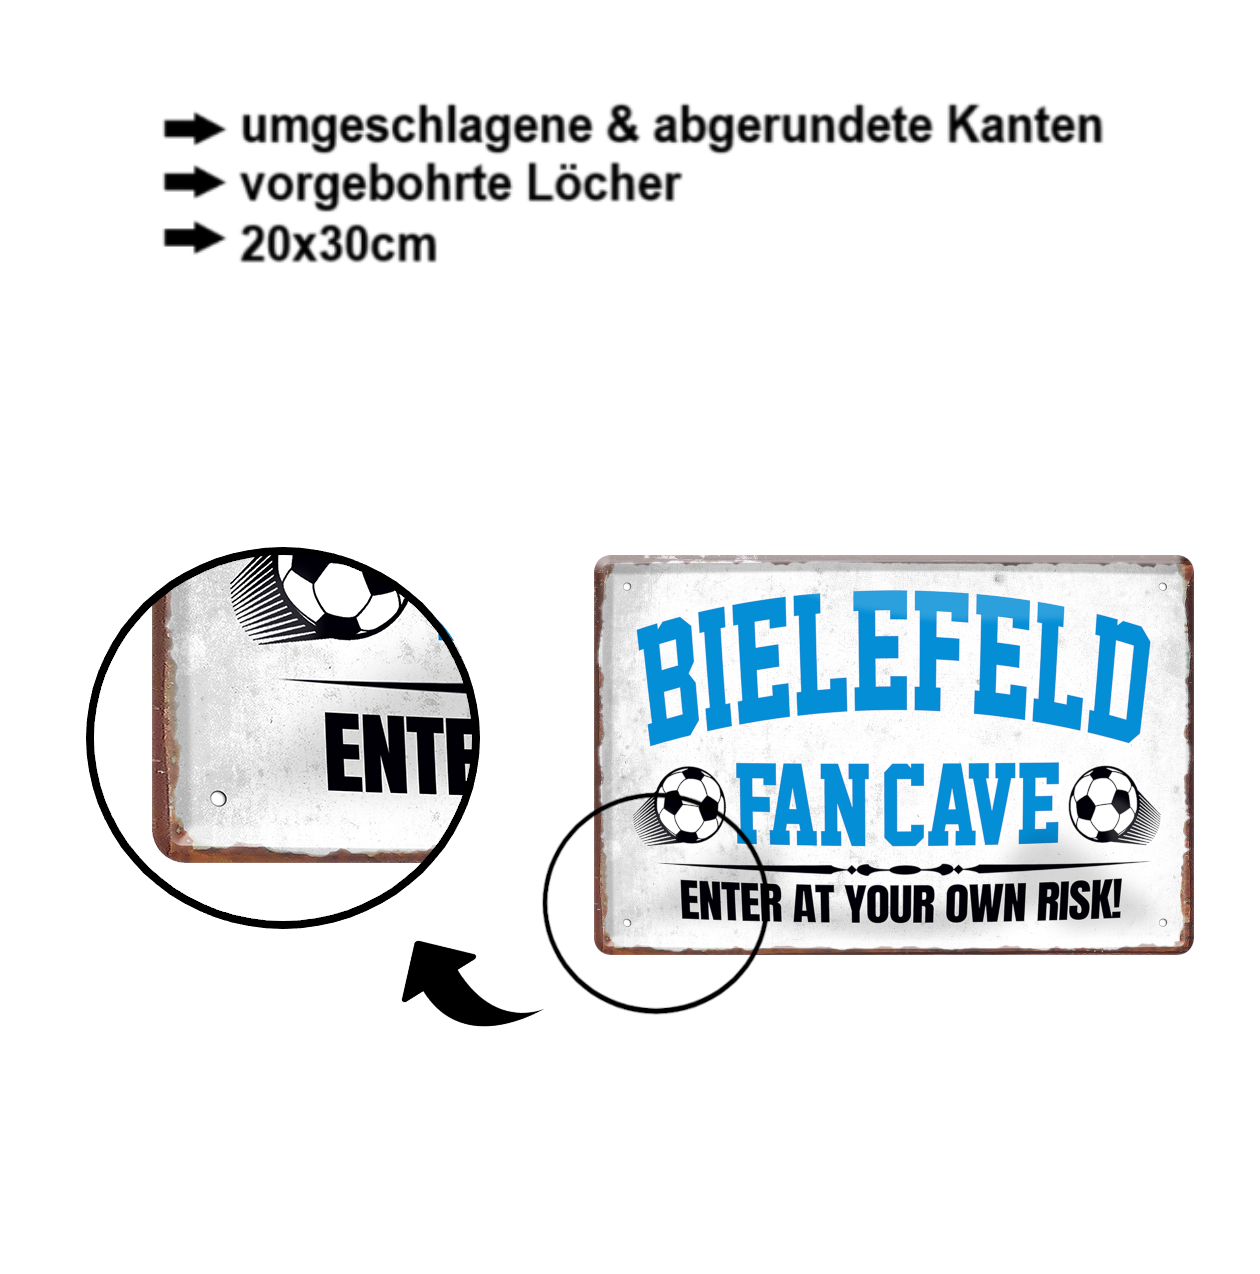 Tin sign "Bielefeld Fan Cave" 20x30cm